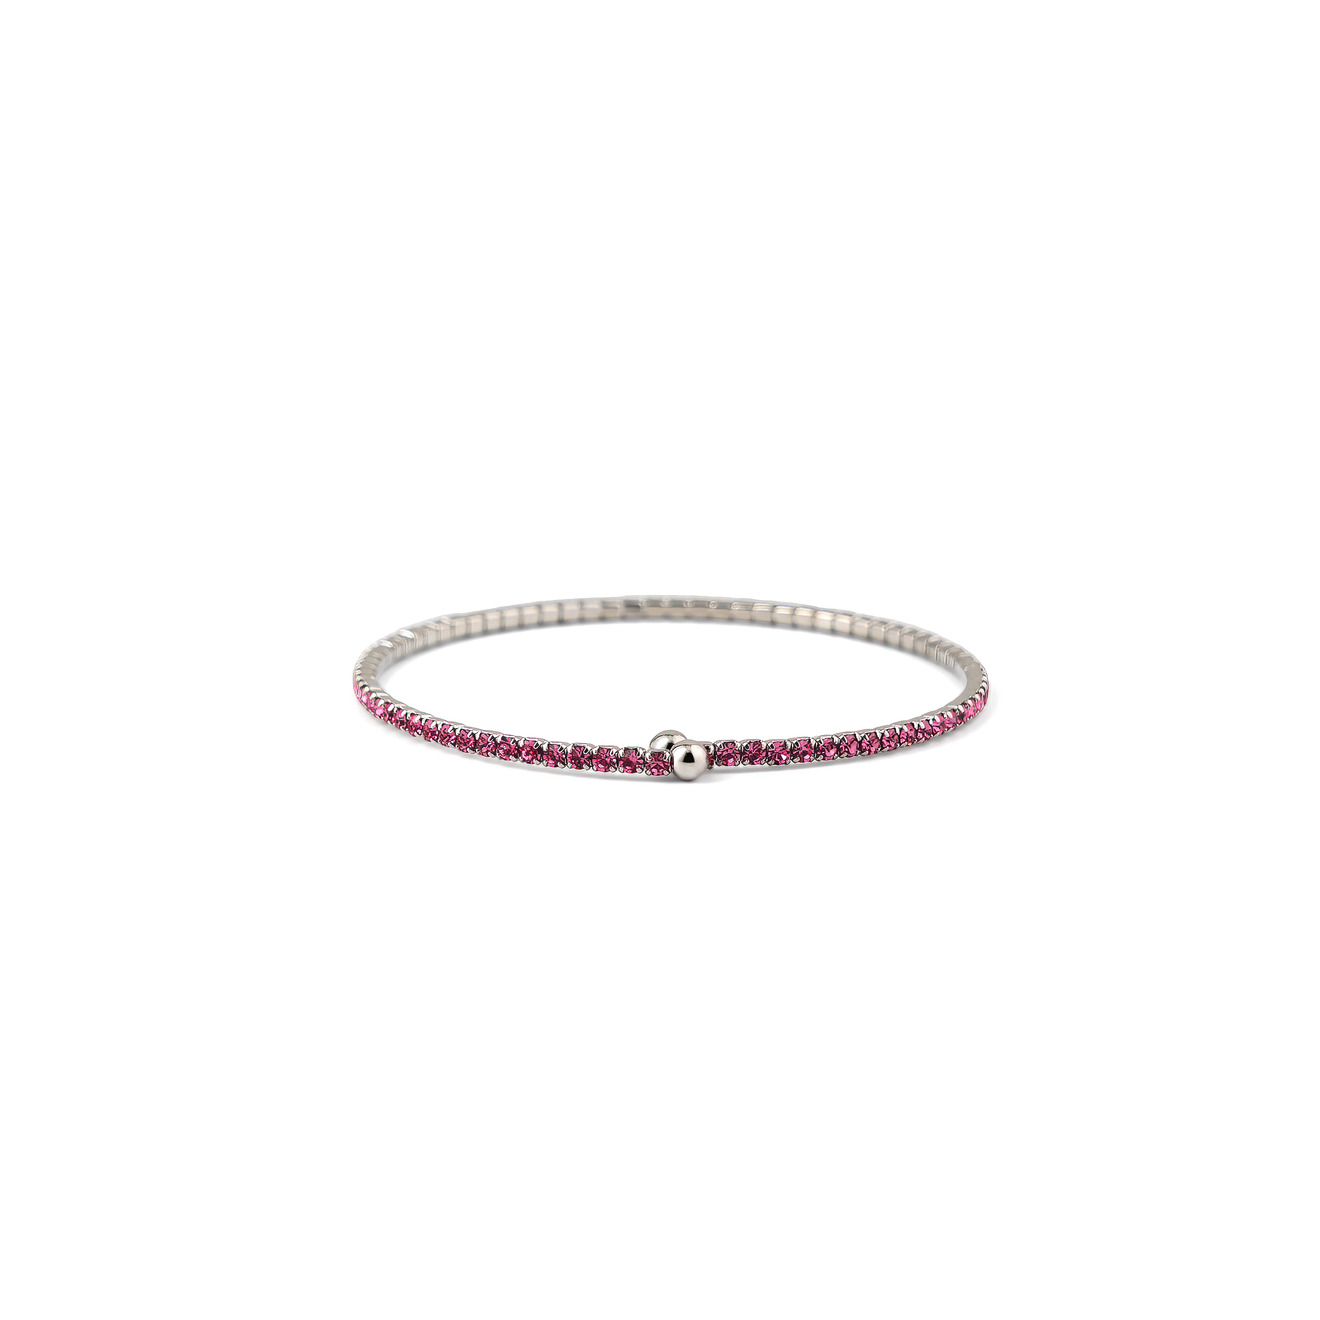 Herald Percy Серебристый браслет с ярко-розовыми кристаллами herald percy золотистый теннисный браслет с разноцветными кристаллами